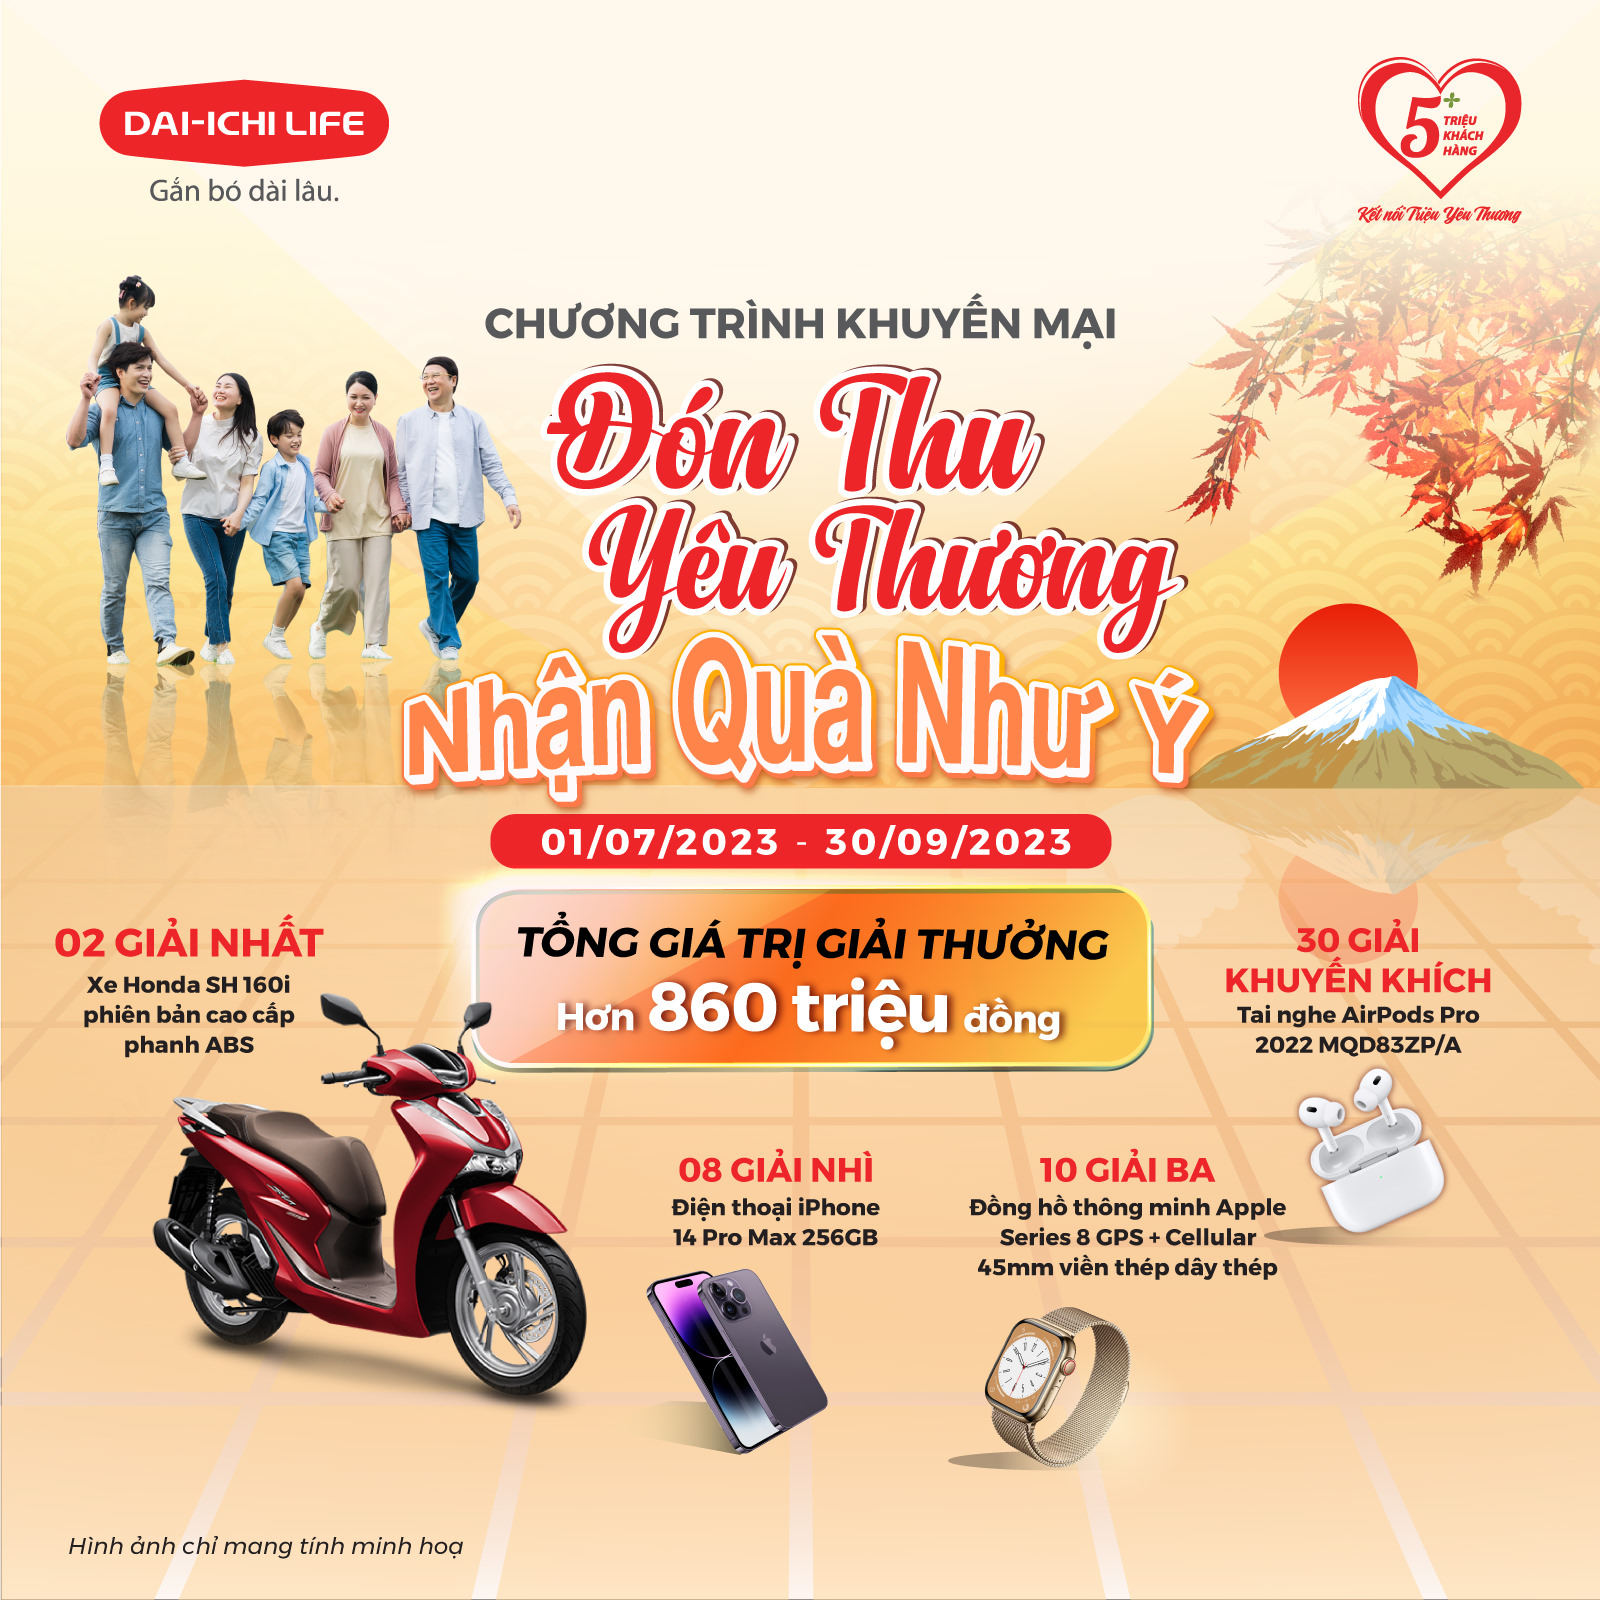 Dai-ichi Life Việt Nam triển khai Chương trình khuyến mại “Đón Thu Yêu Thương, Nhận Quà Như Ý”...